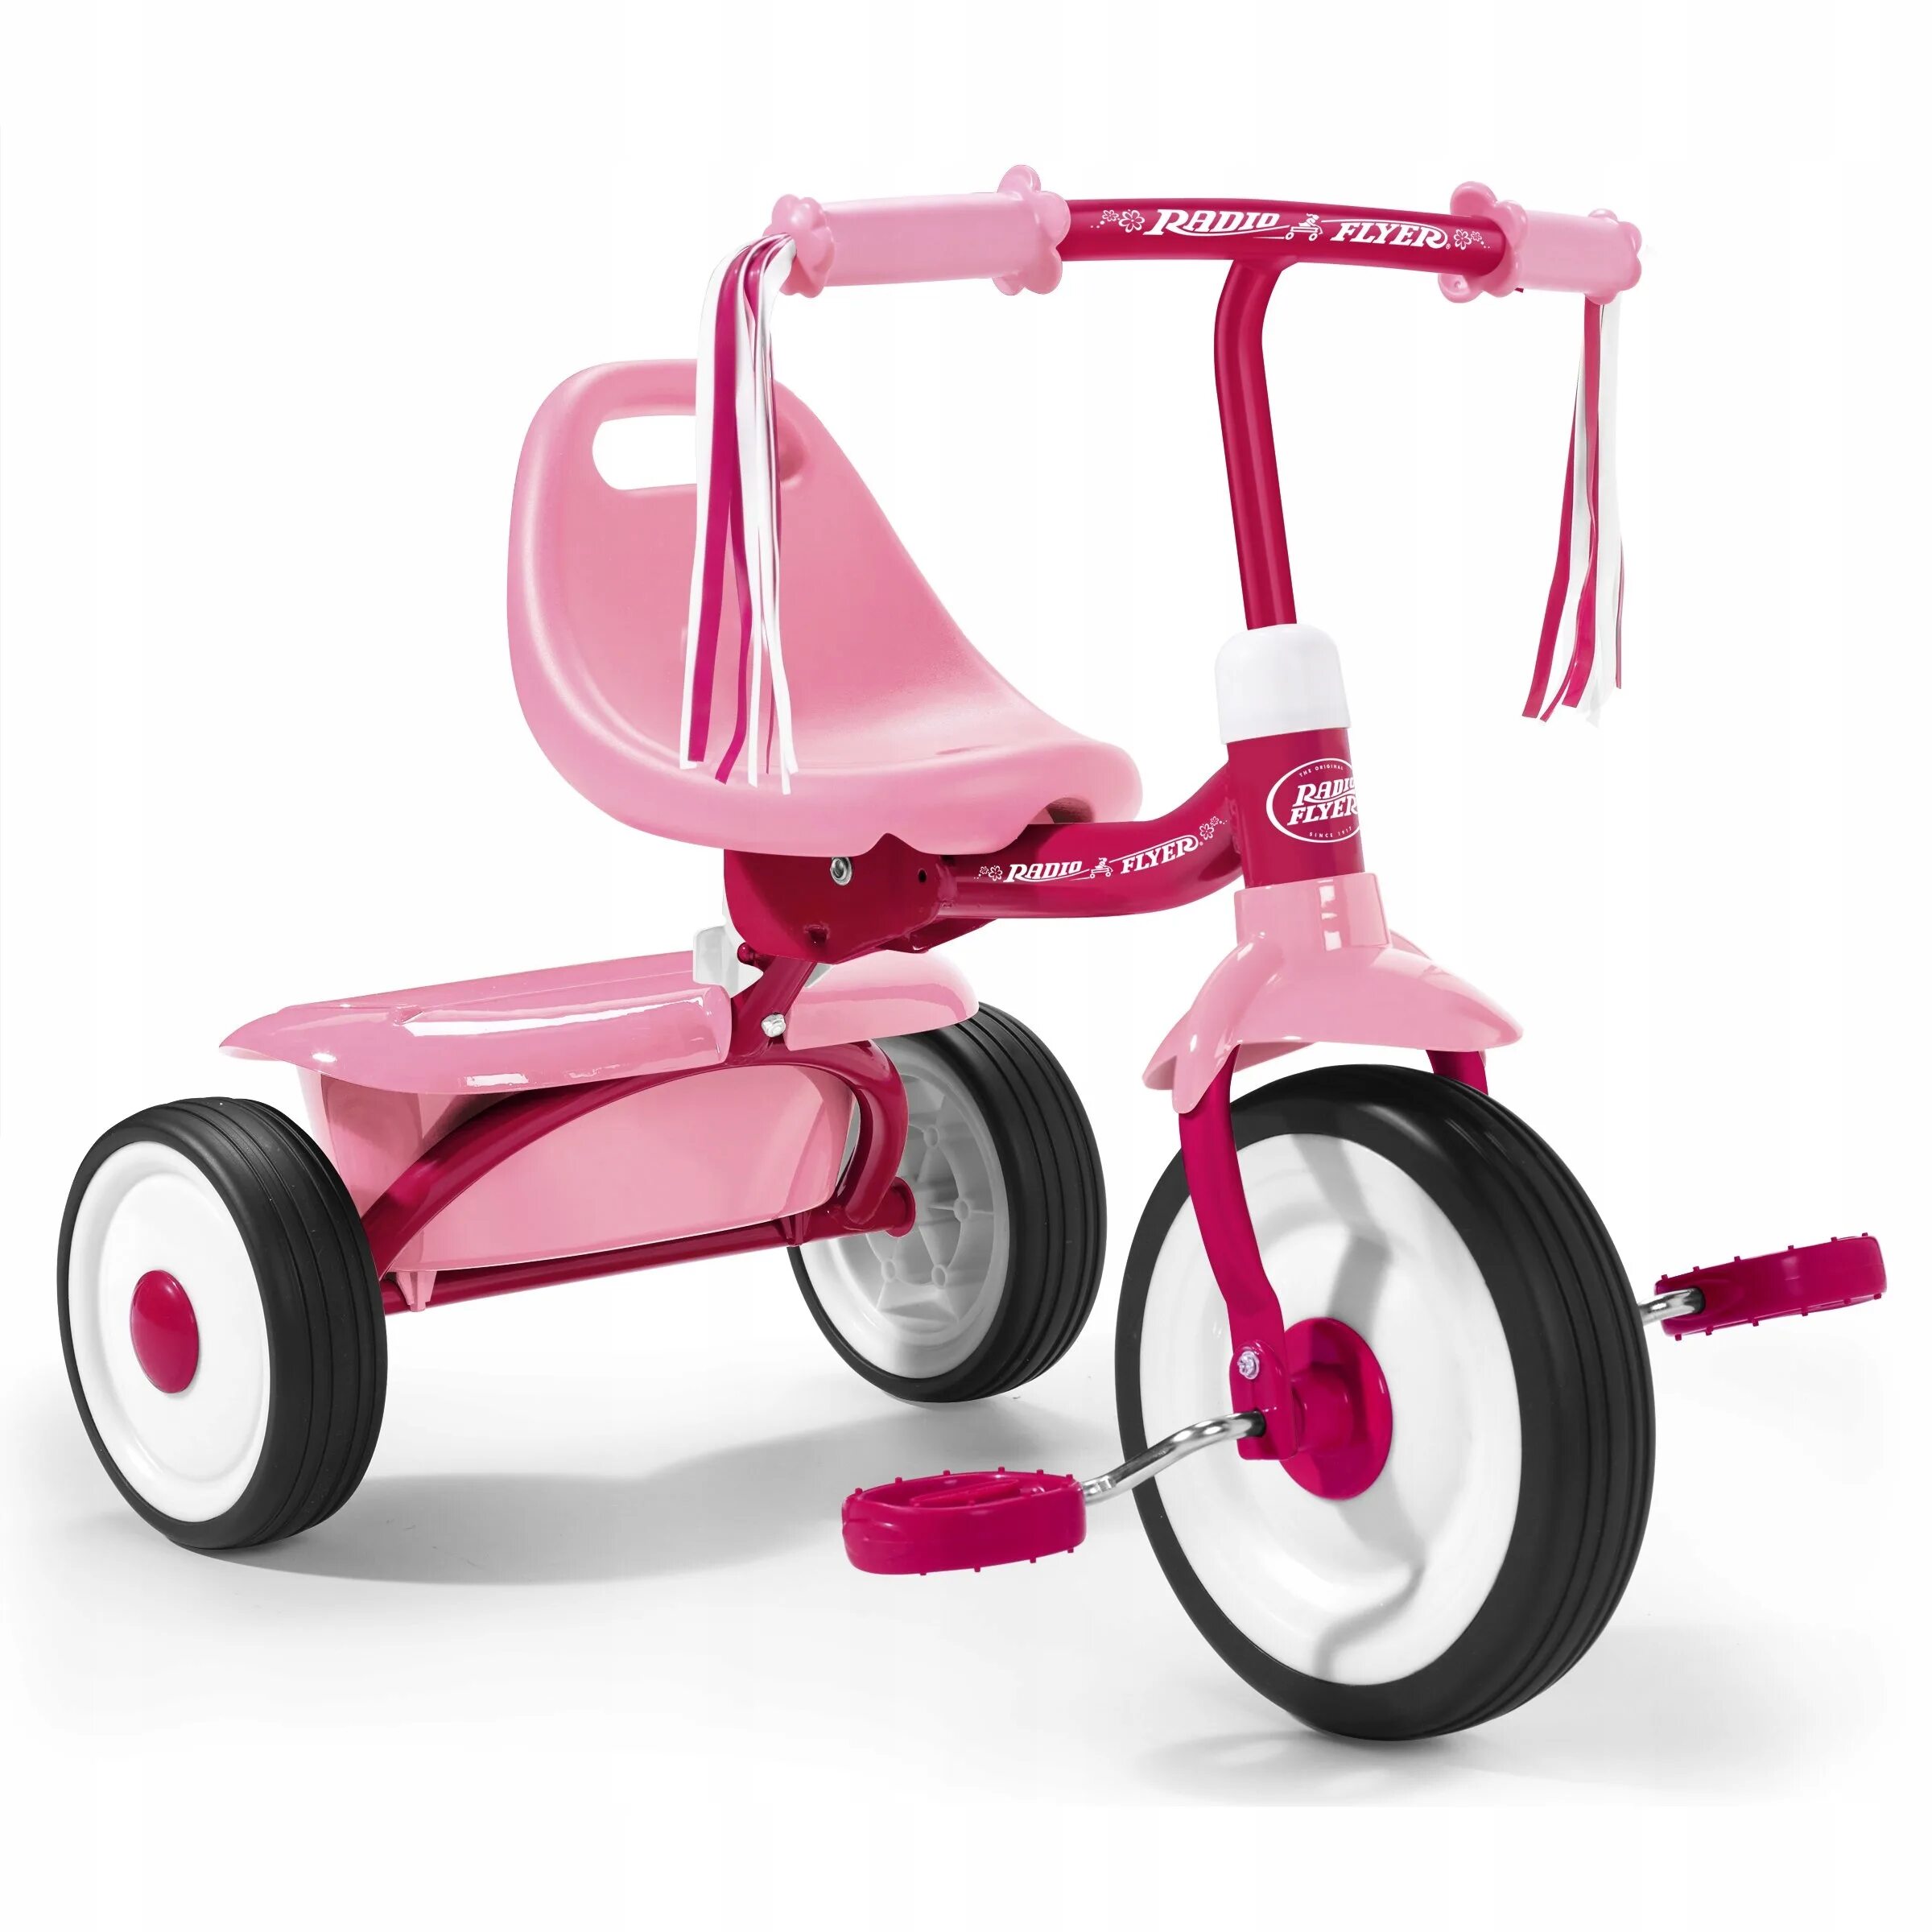 Какой велосипед купить ребенку 7. Radio Flyer велосипед трехколесный. Kids Trike велосипед трехколесный. Трехколесный велосипед Baby Land ts4237c-2рс. Велосипед TCV 083470 трехколесный.